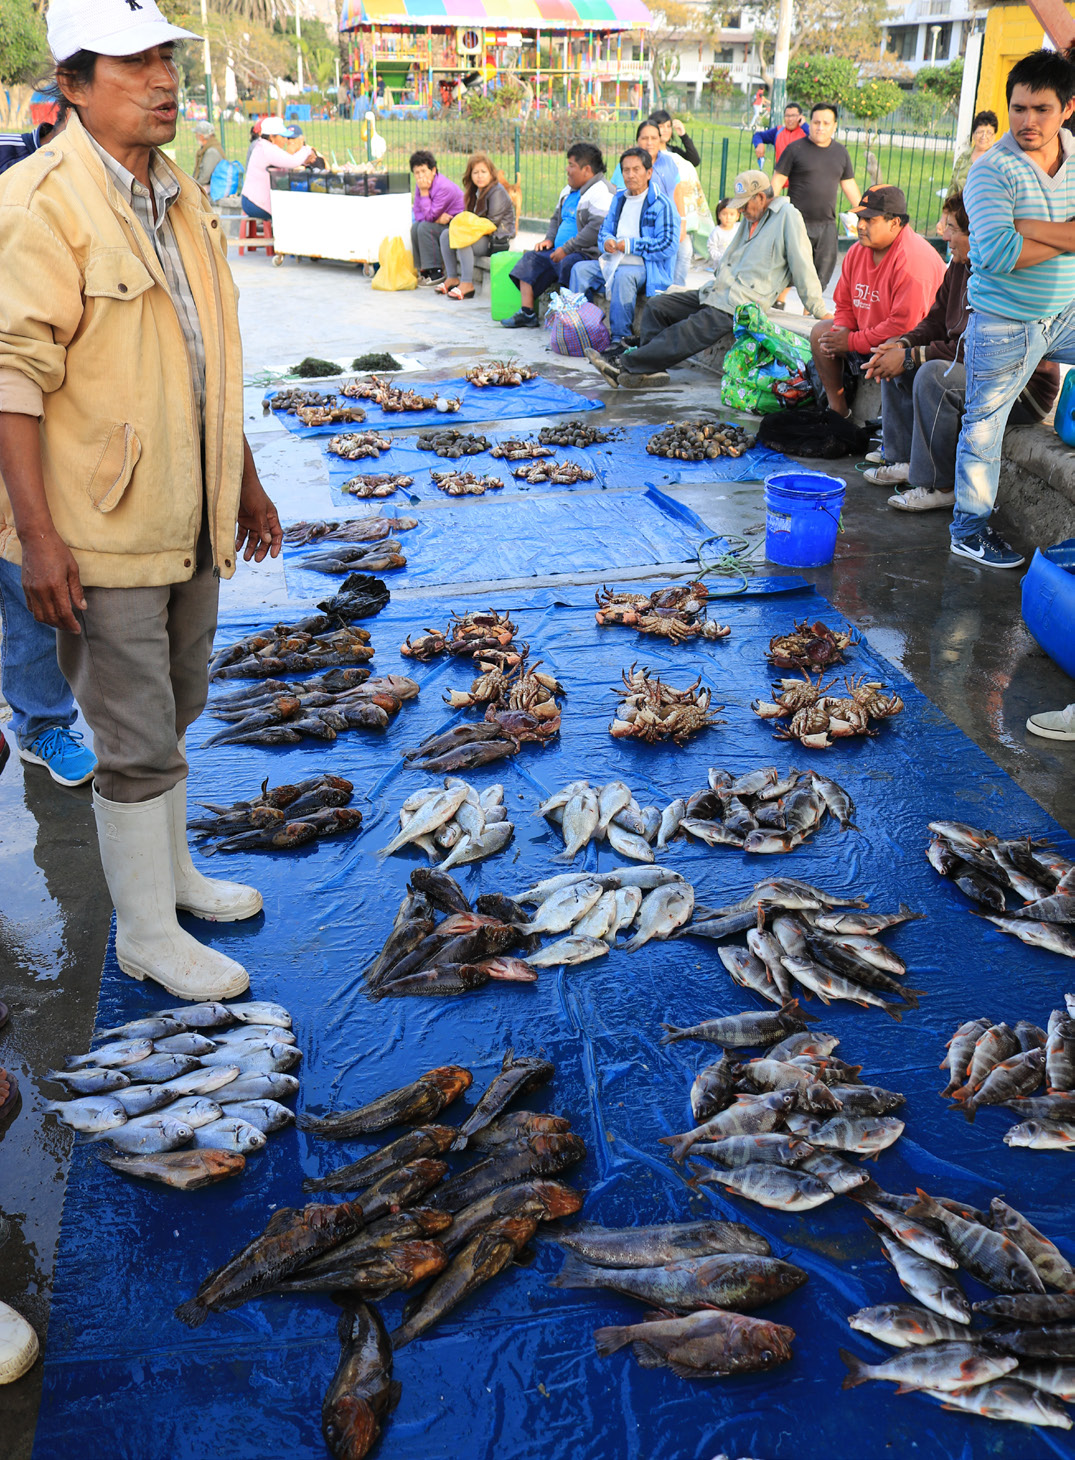 漁夫在秘魯的銷售碼頭上的捕獲。 照片©Jeremy Rude / TNC